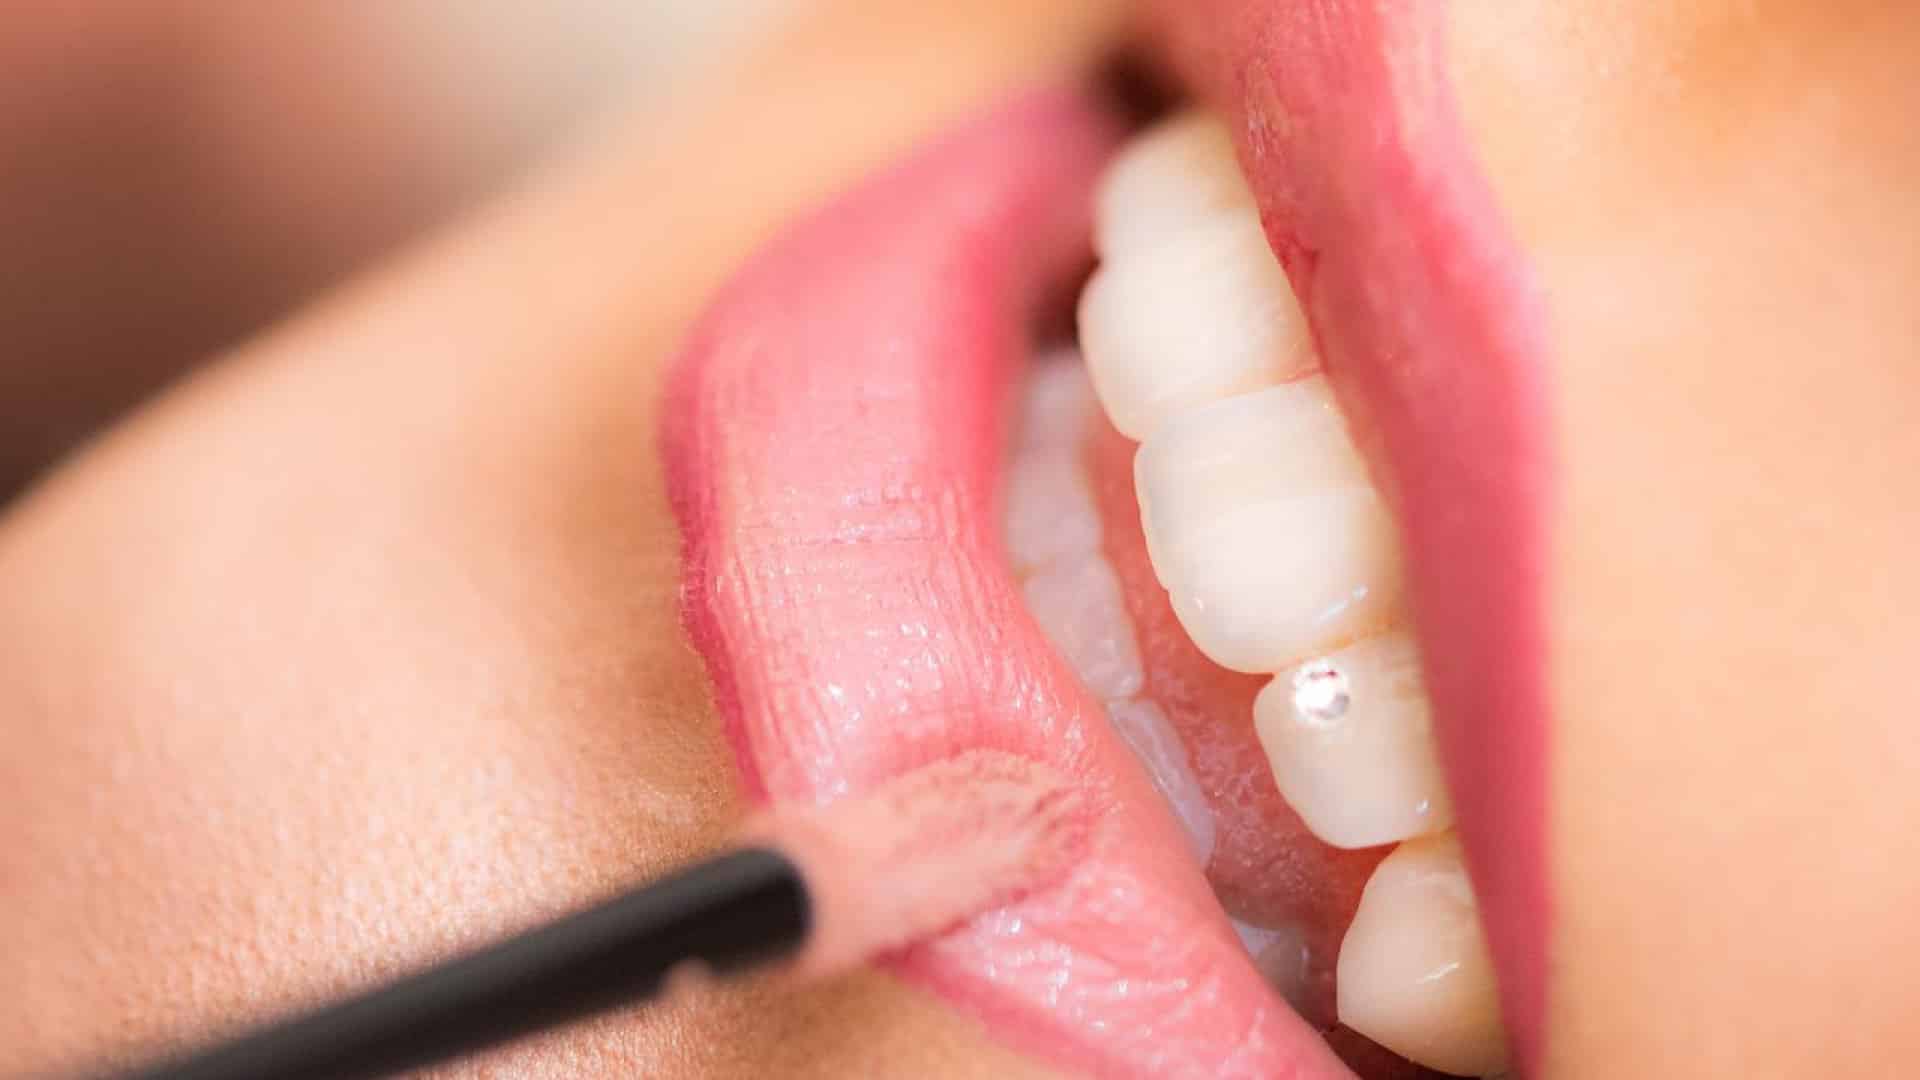 Cabinet dentaire : quels sont les domaines d’intervention ?